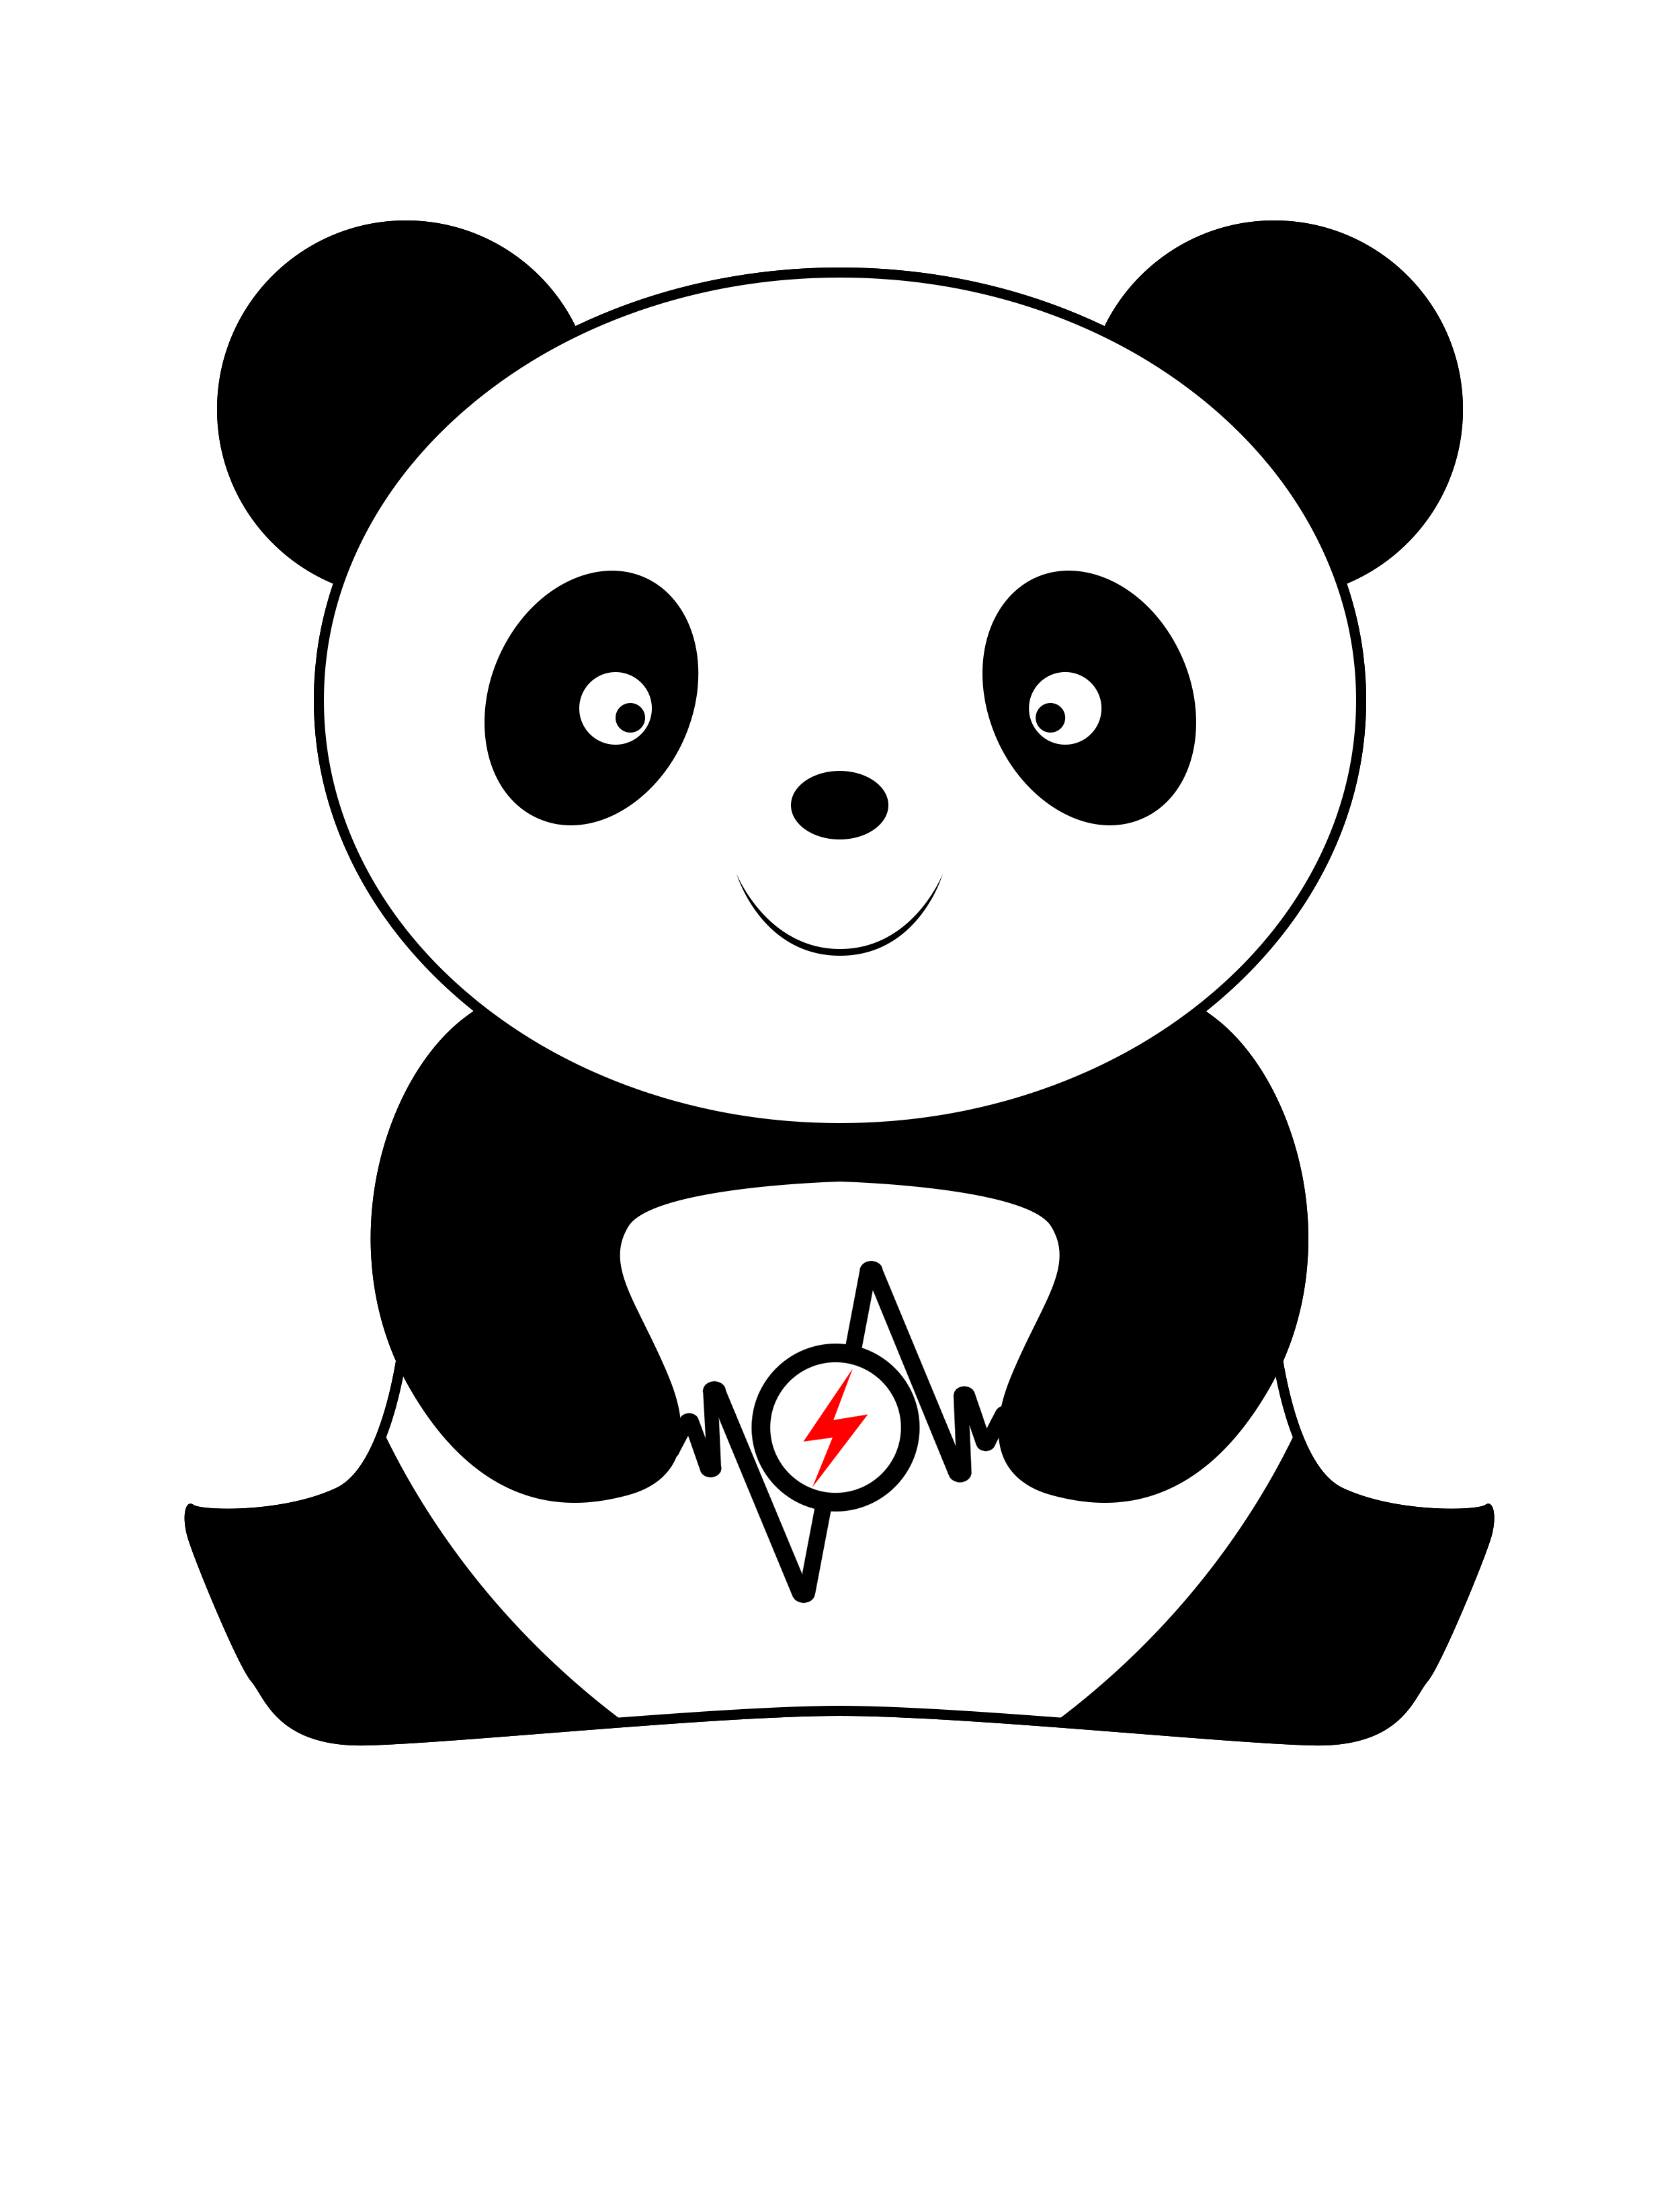 江苏熊猫电源科技有限公司